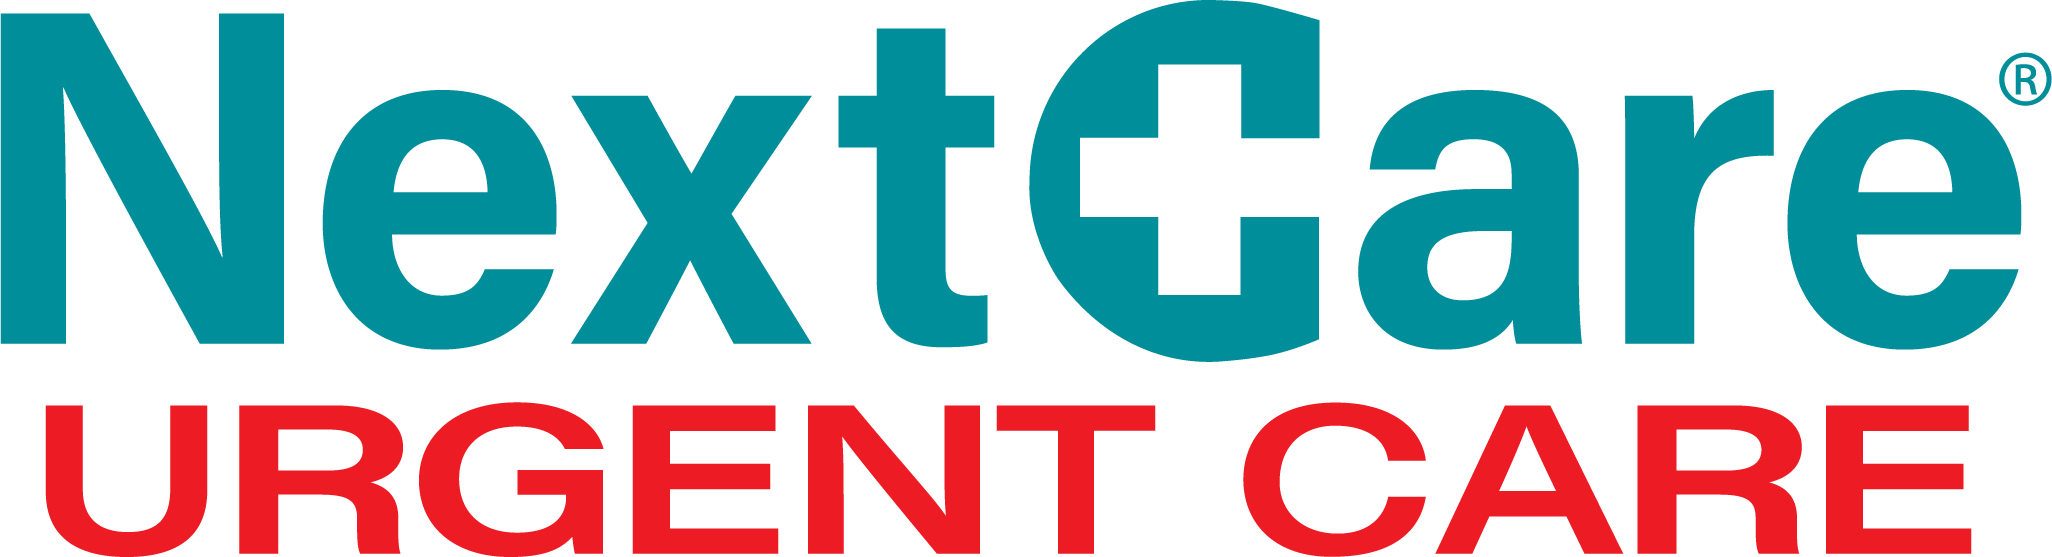 NextCare Urgent Care - Kingwood Logo